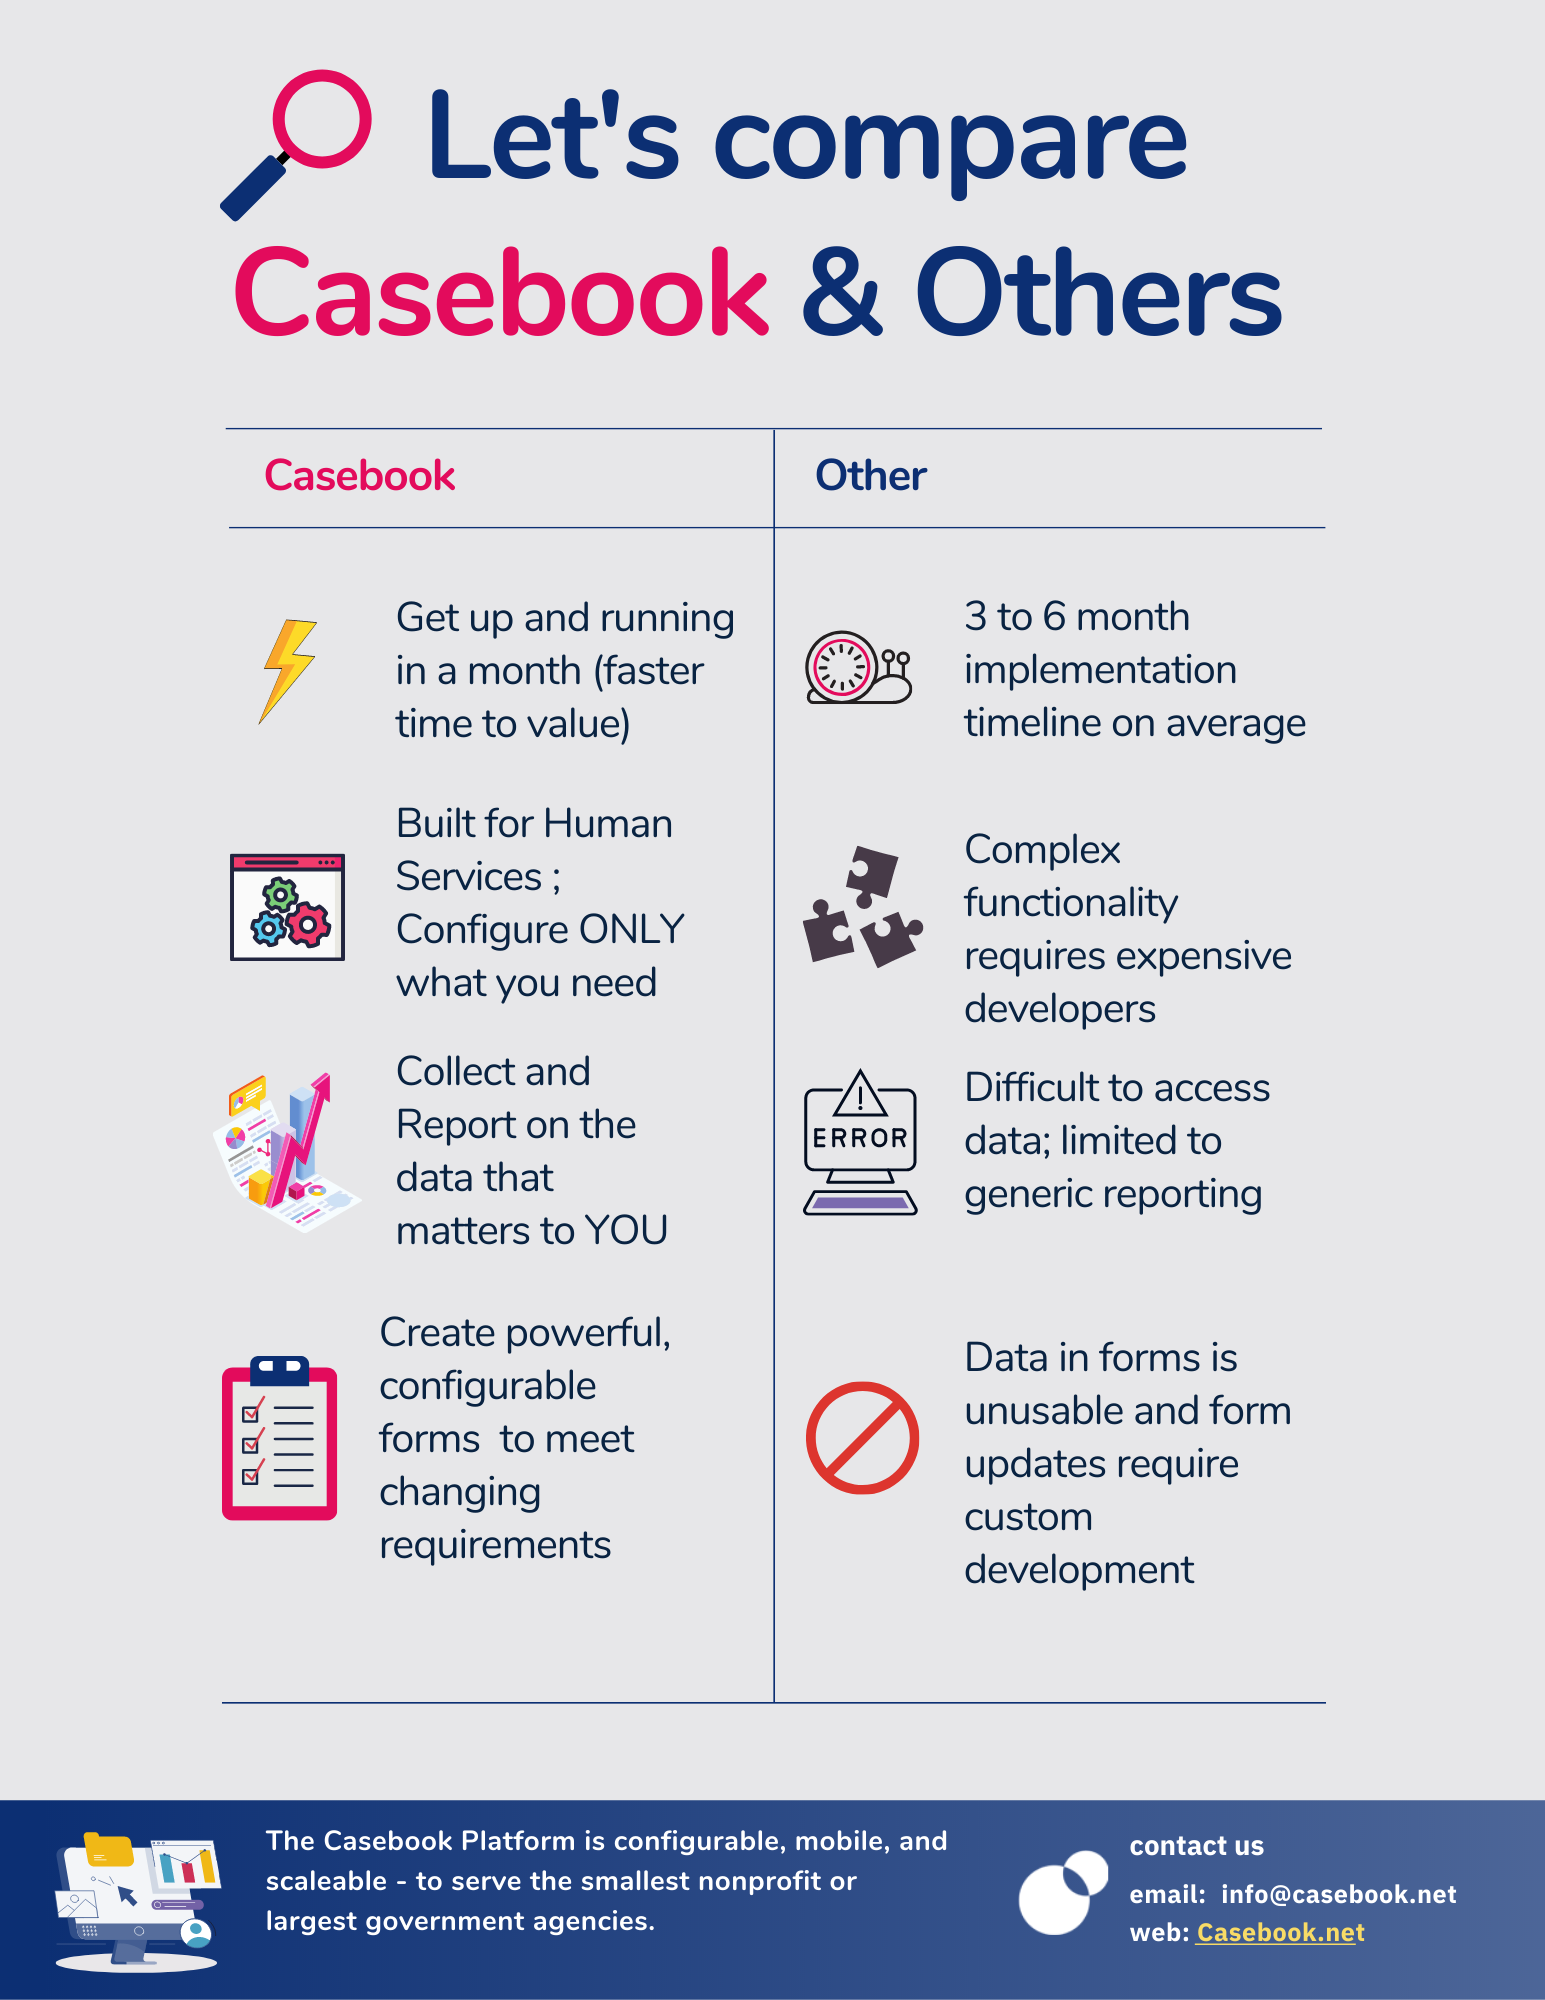 Casebook Compared to Competitors